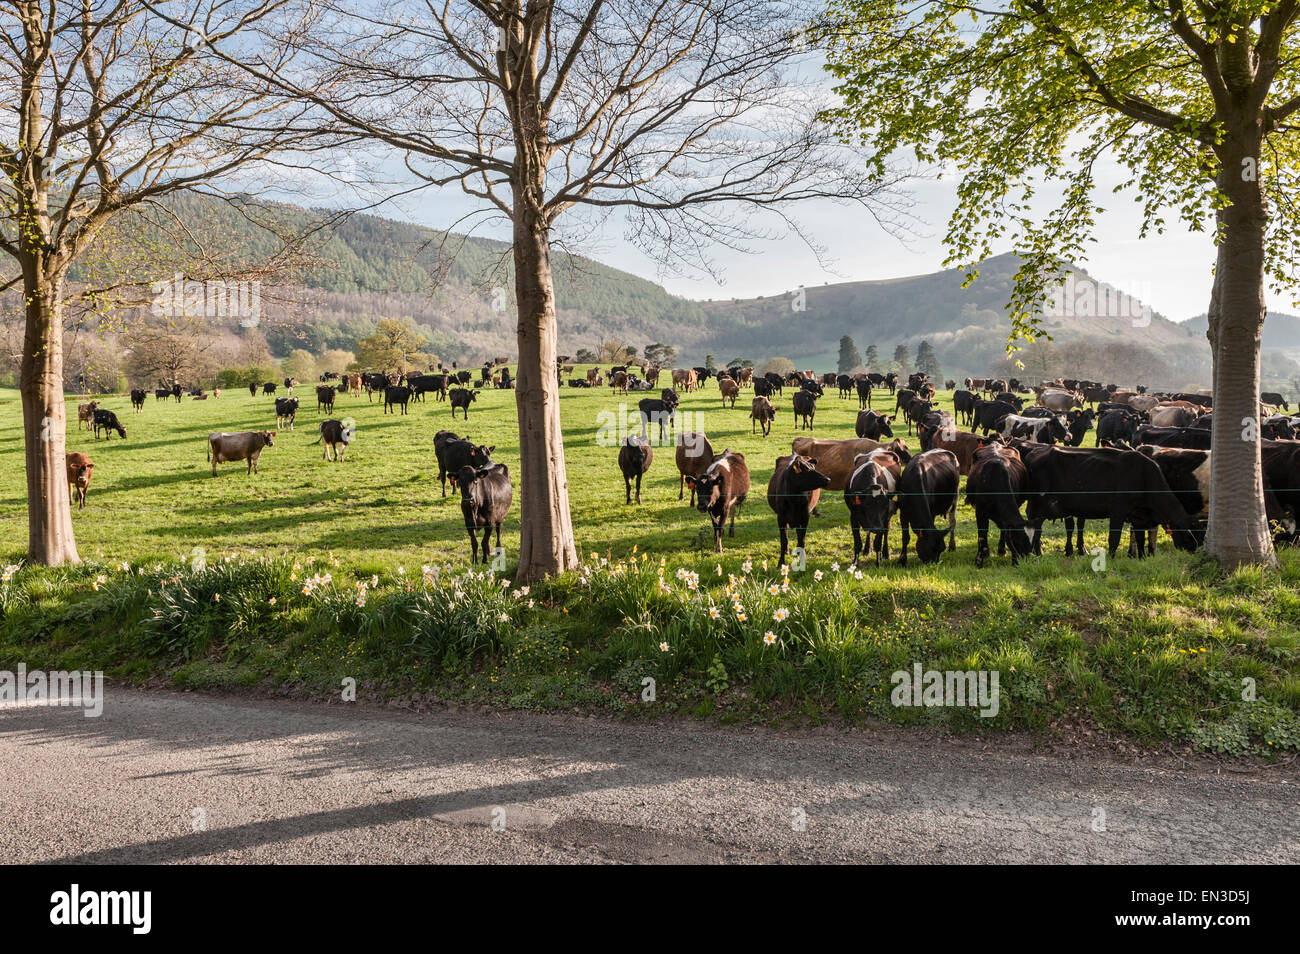 Knill, near Presteigne, Powys, UK. A herd of dairy cattle in a field beneath Herrock Hill Stock Photo